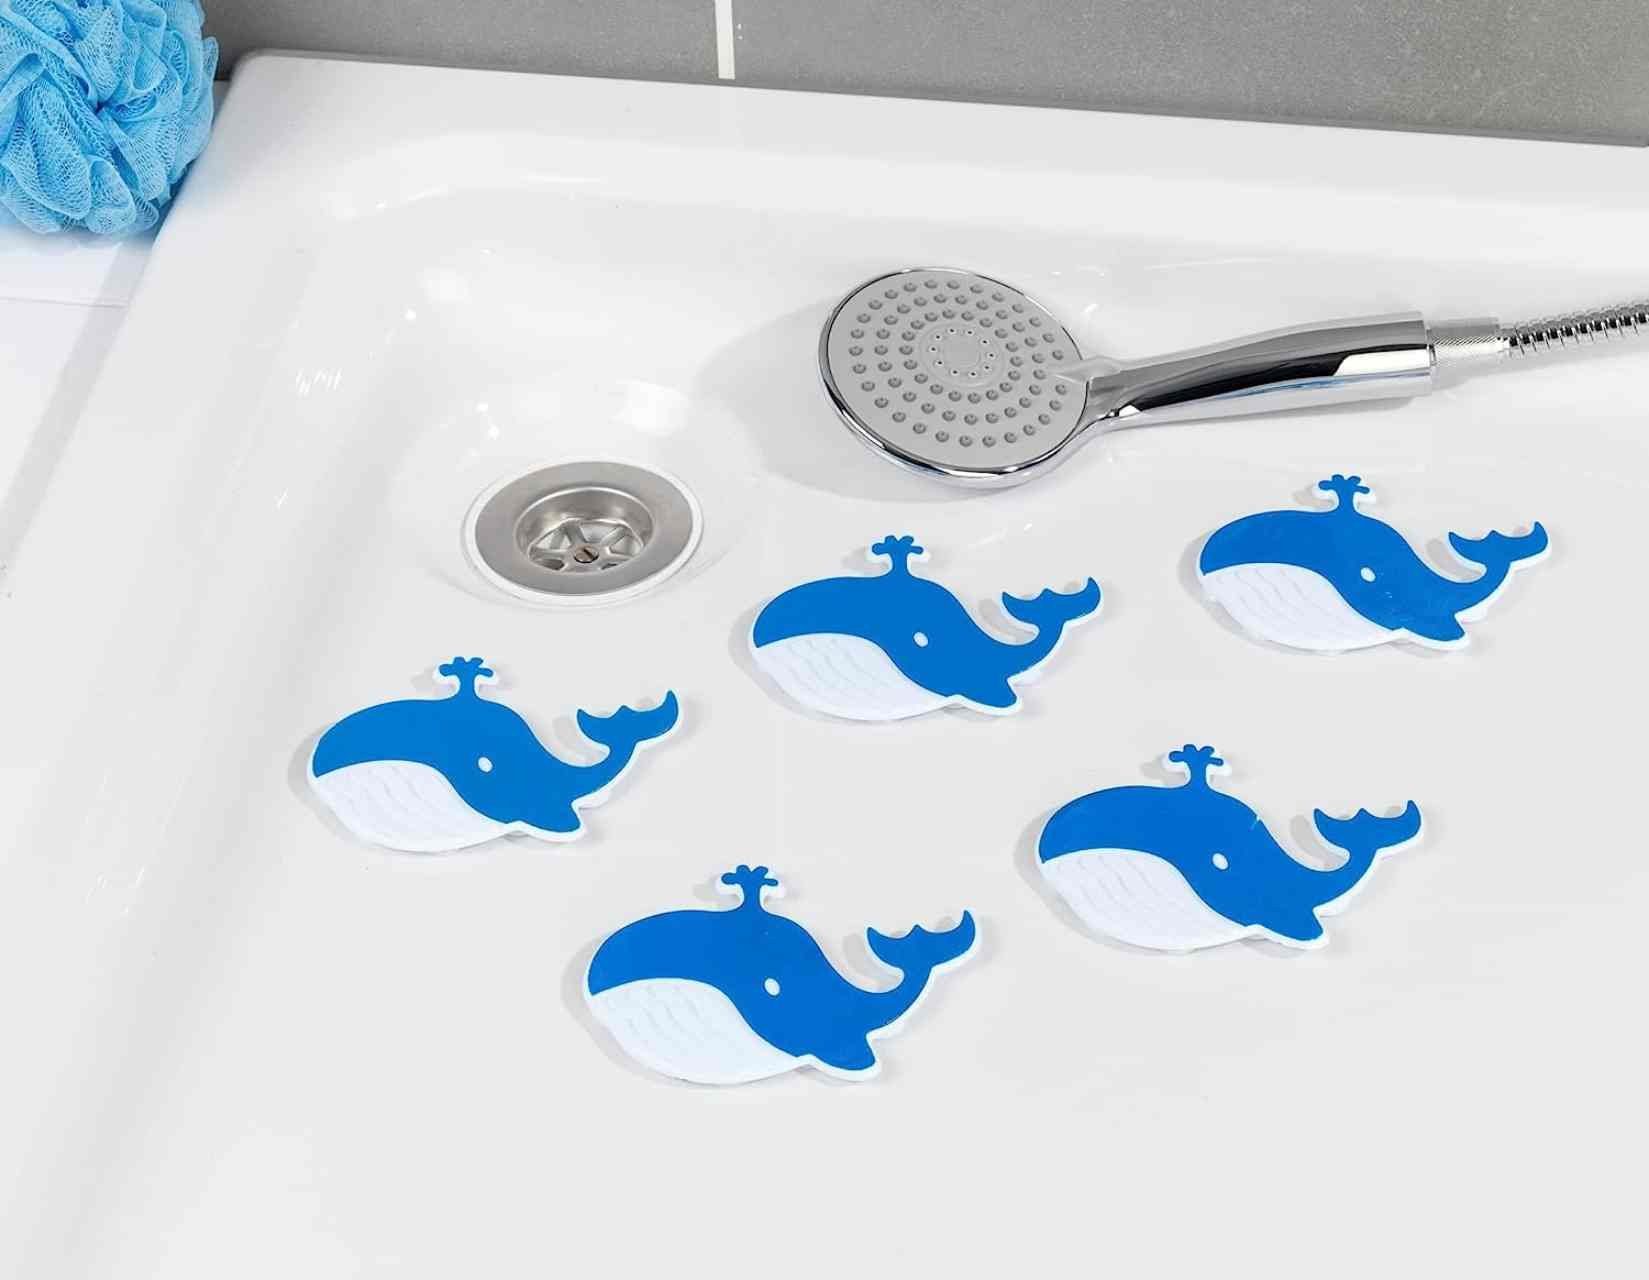 5er Set Anti-Rutsch-Sticker Badewanne Dusche